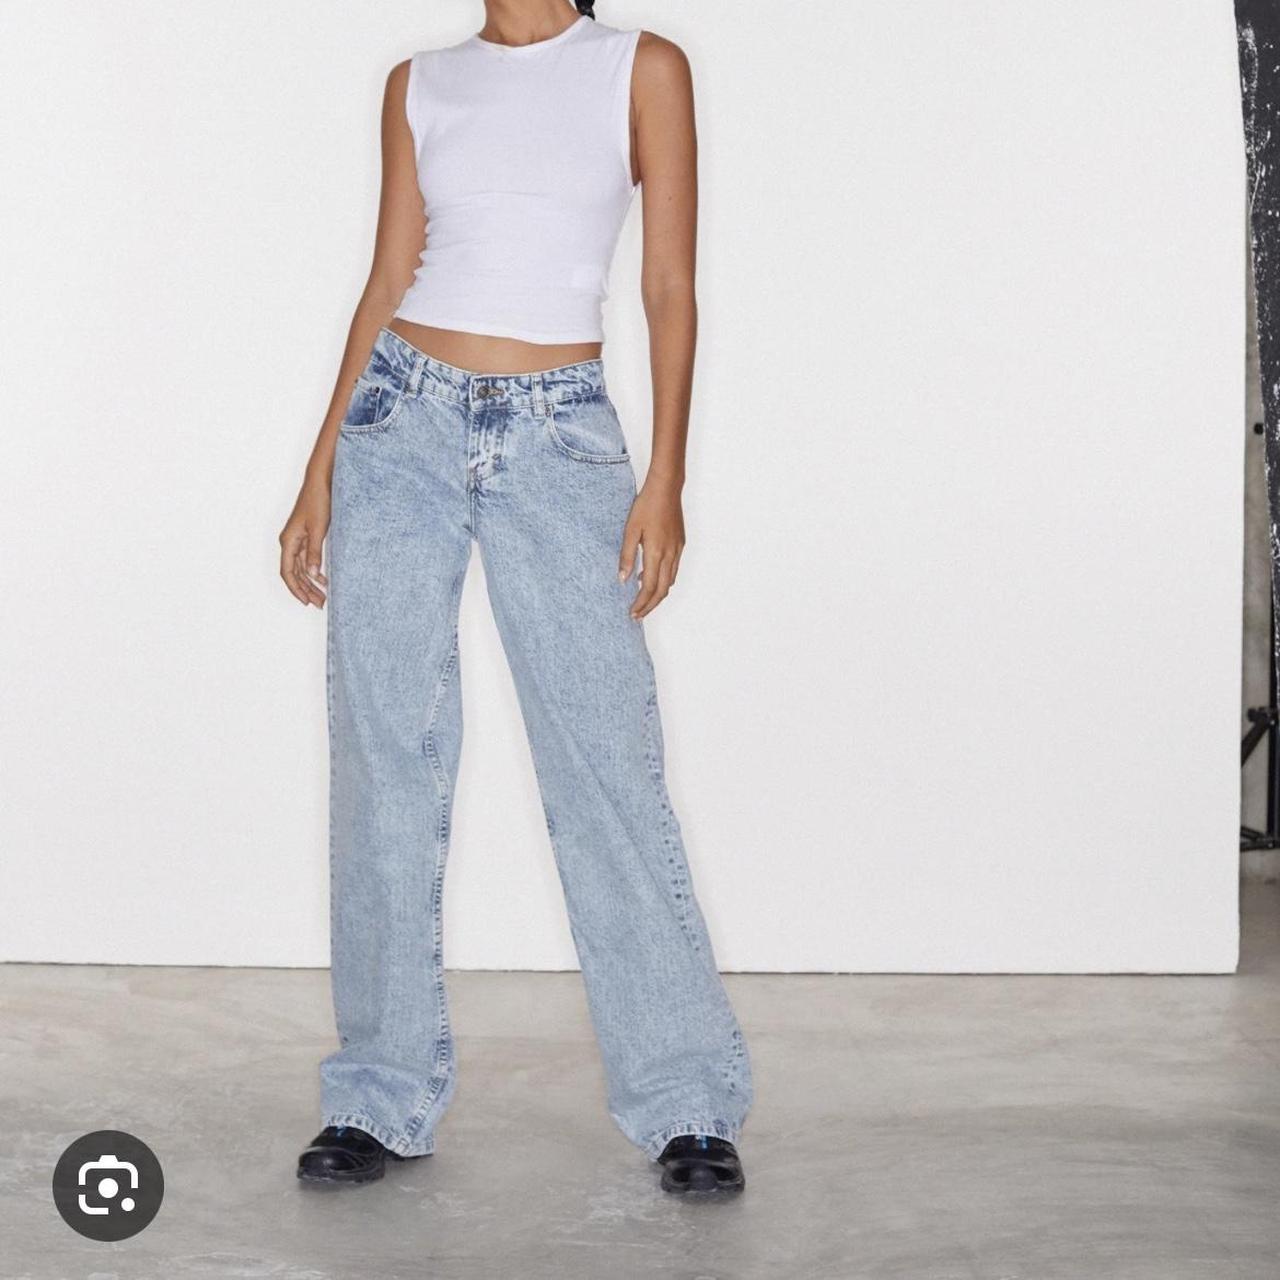 Amazon.in: Parallel Jeans For Women High Waist Denim-pokeht.vn